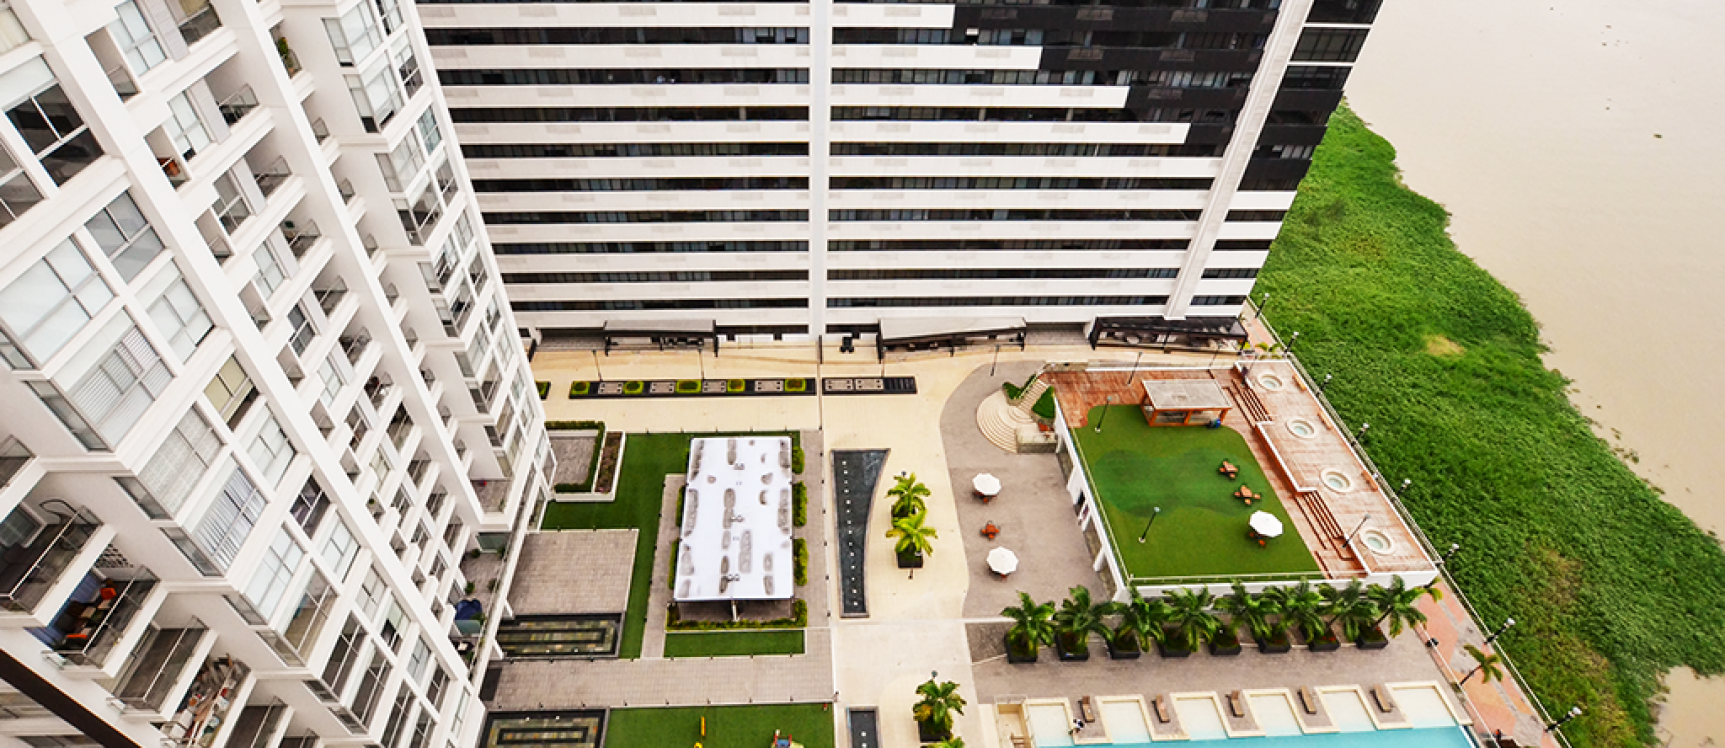 GeoBienes - Departamento en alquiler sector centro de Guayaquil - Plusvalia Guayaquil Casas de venta y alquiler Inmobiliaria Ecuador